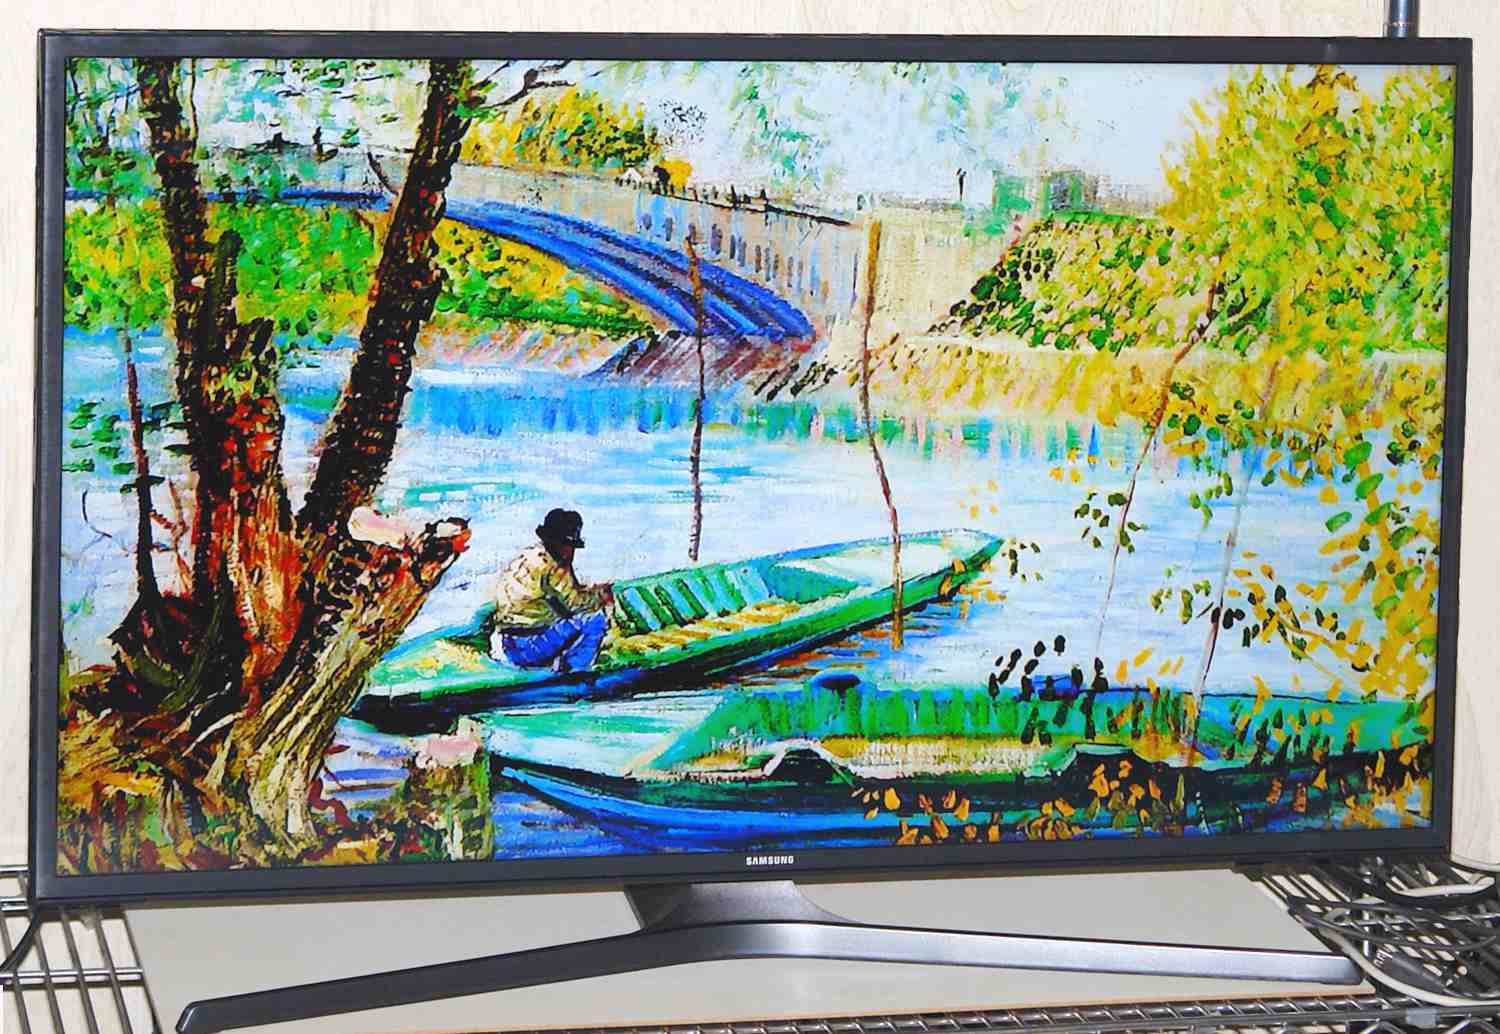 Artcast - Målning på TV - Van Gogh - Fiske på våren